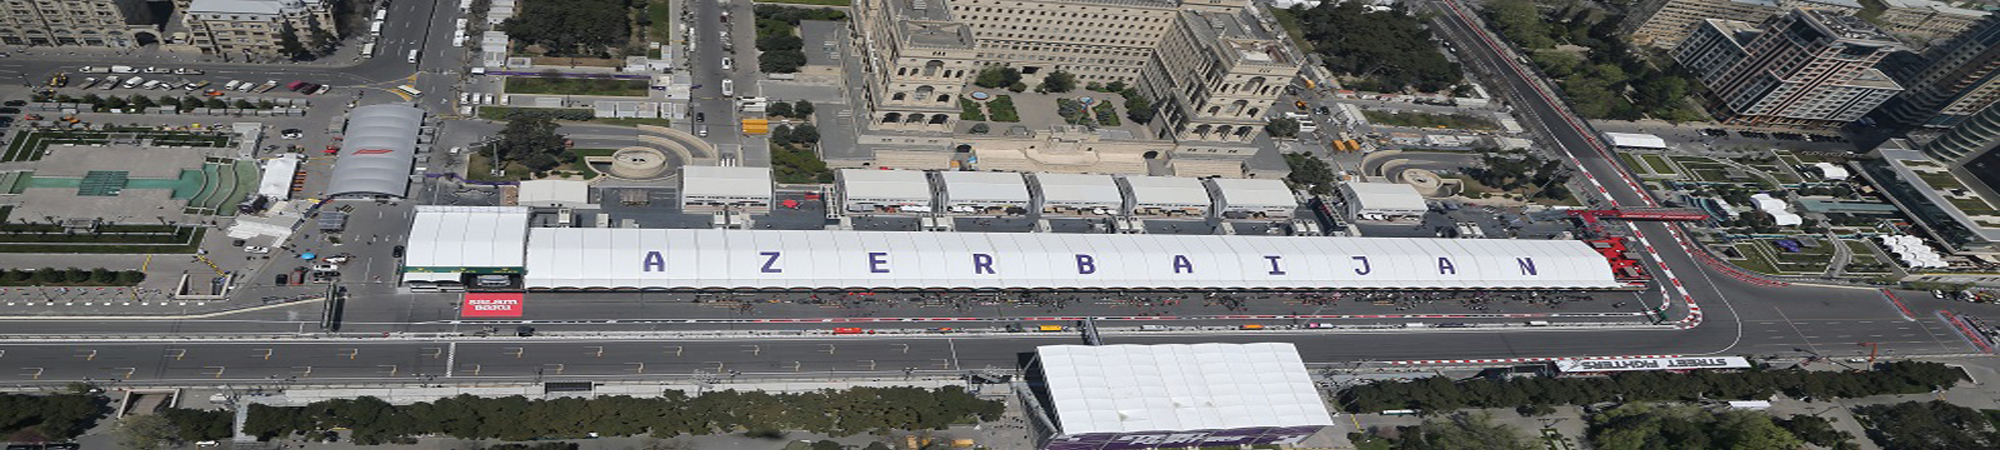 2021 Azerbaijan, Baku, Formula One Grand Prix, Race ...